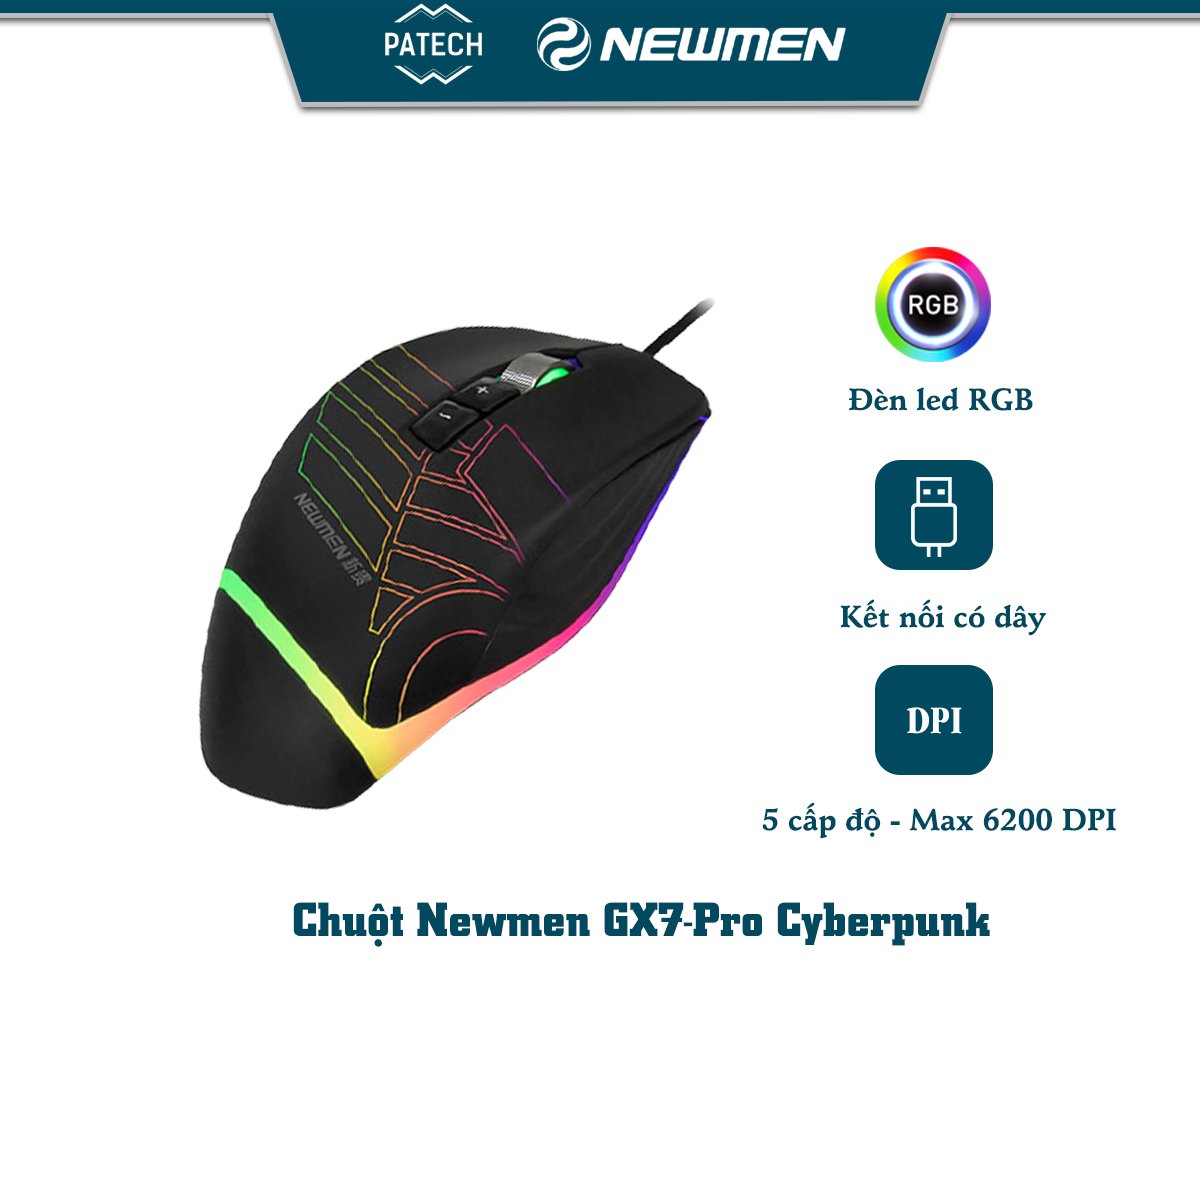 Chuột máy tính có dây Newmen GX7-PRO 6200DPI phong cách Cyberpunk bất đối xứng - Hàng chính hãng